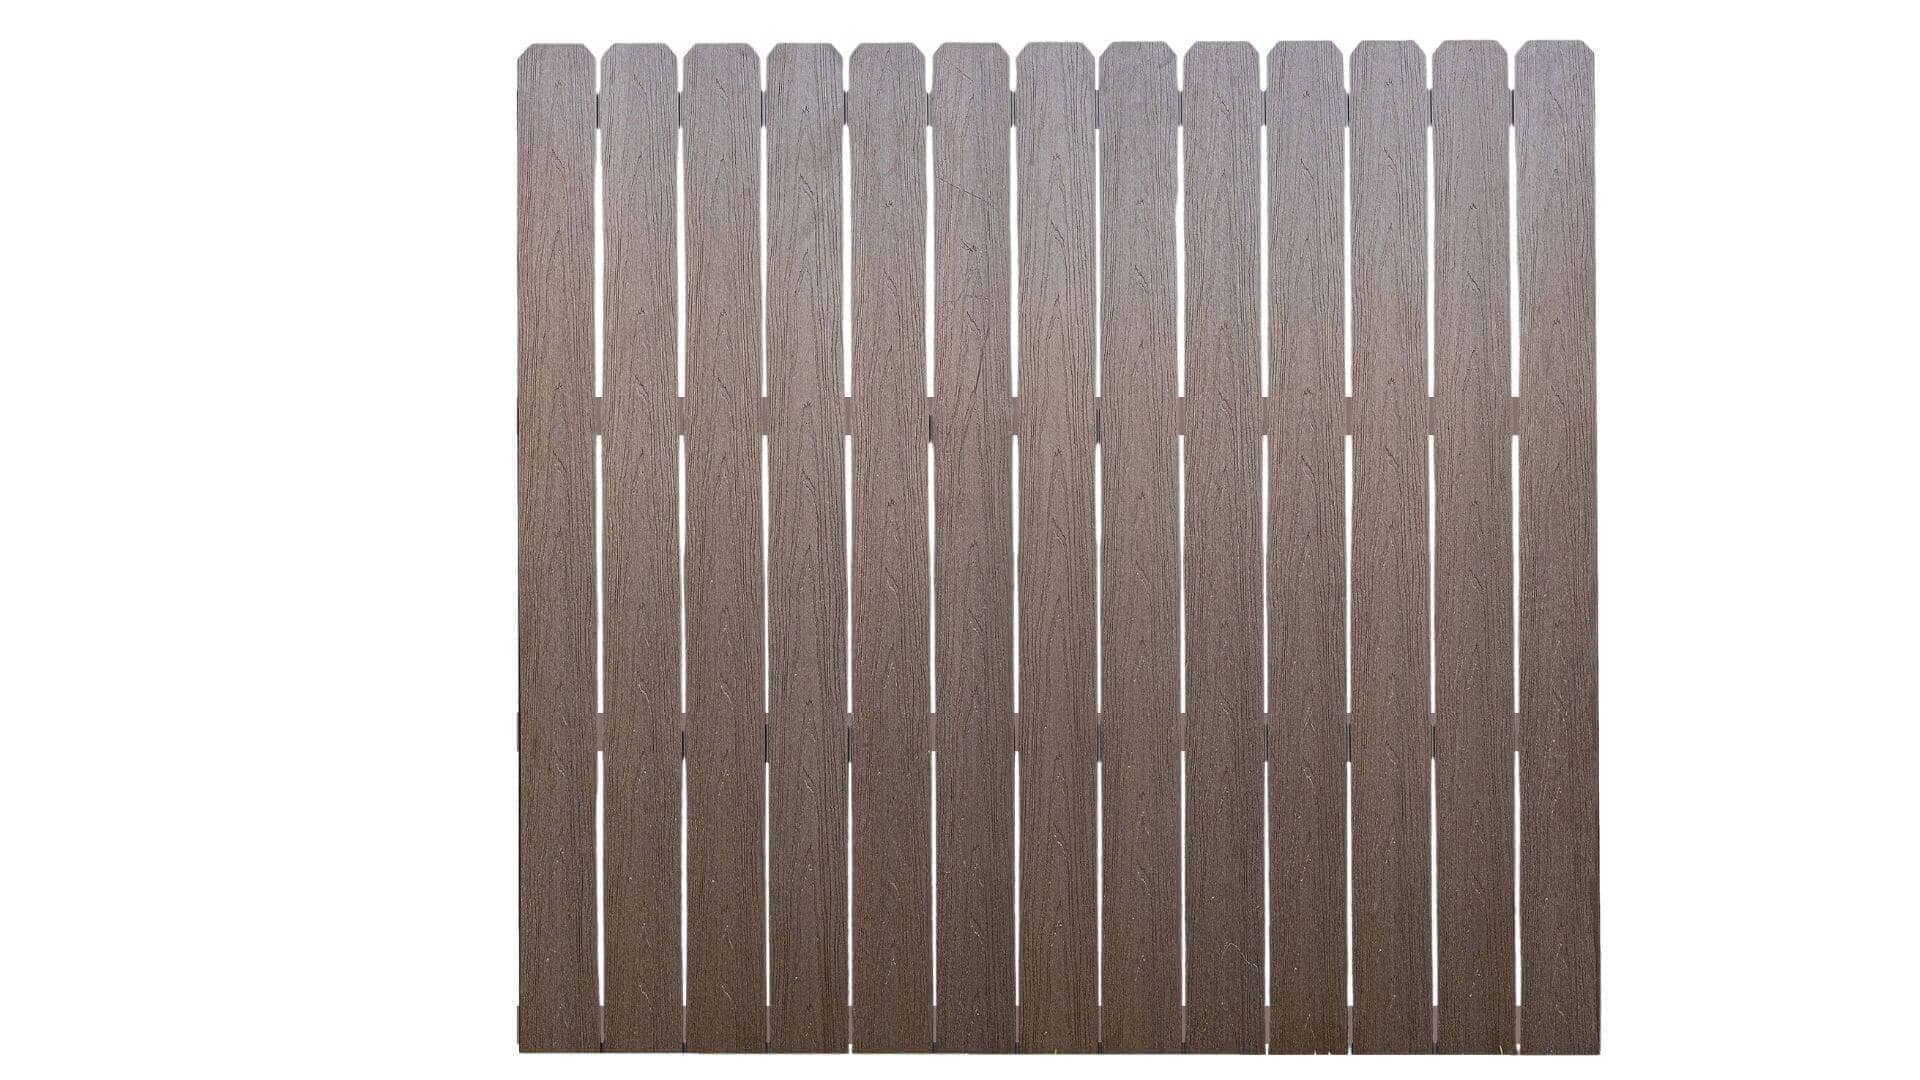 Cap Composite Pre-Assembled Fence Panels